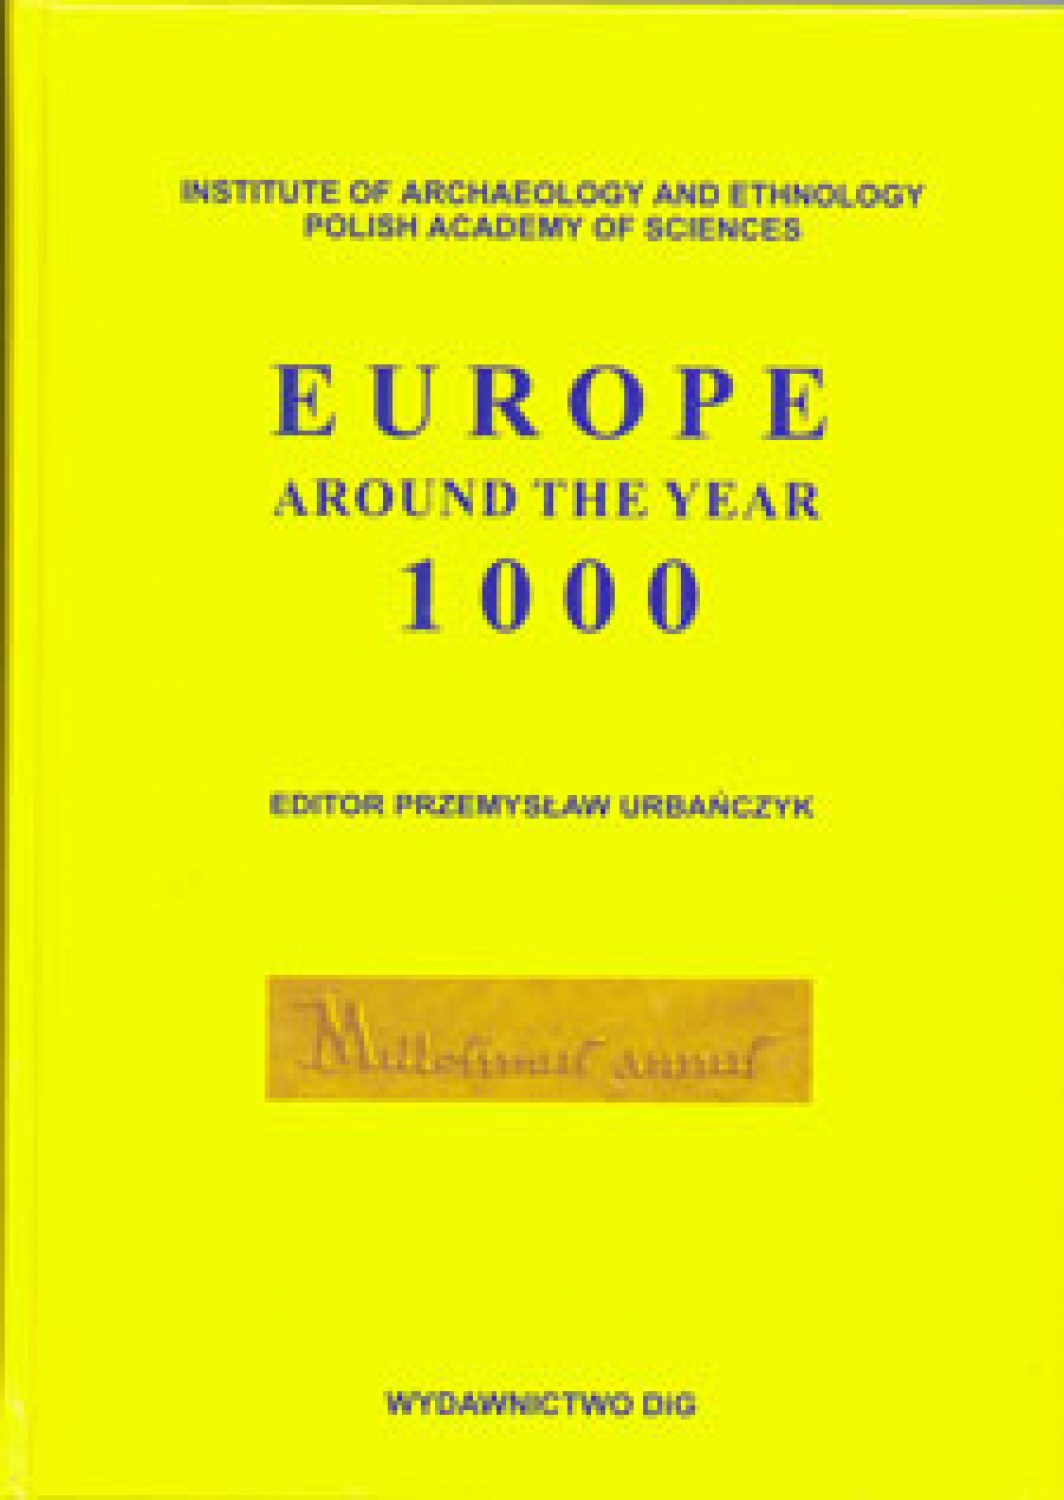 Europe around the Year 1000